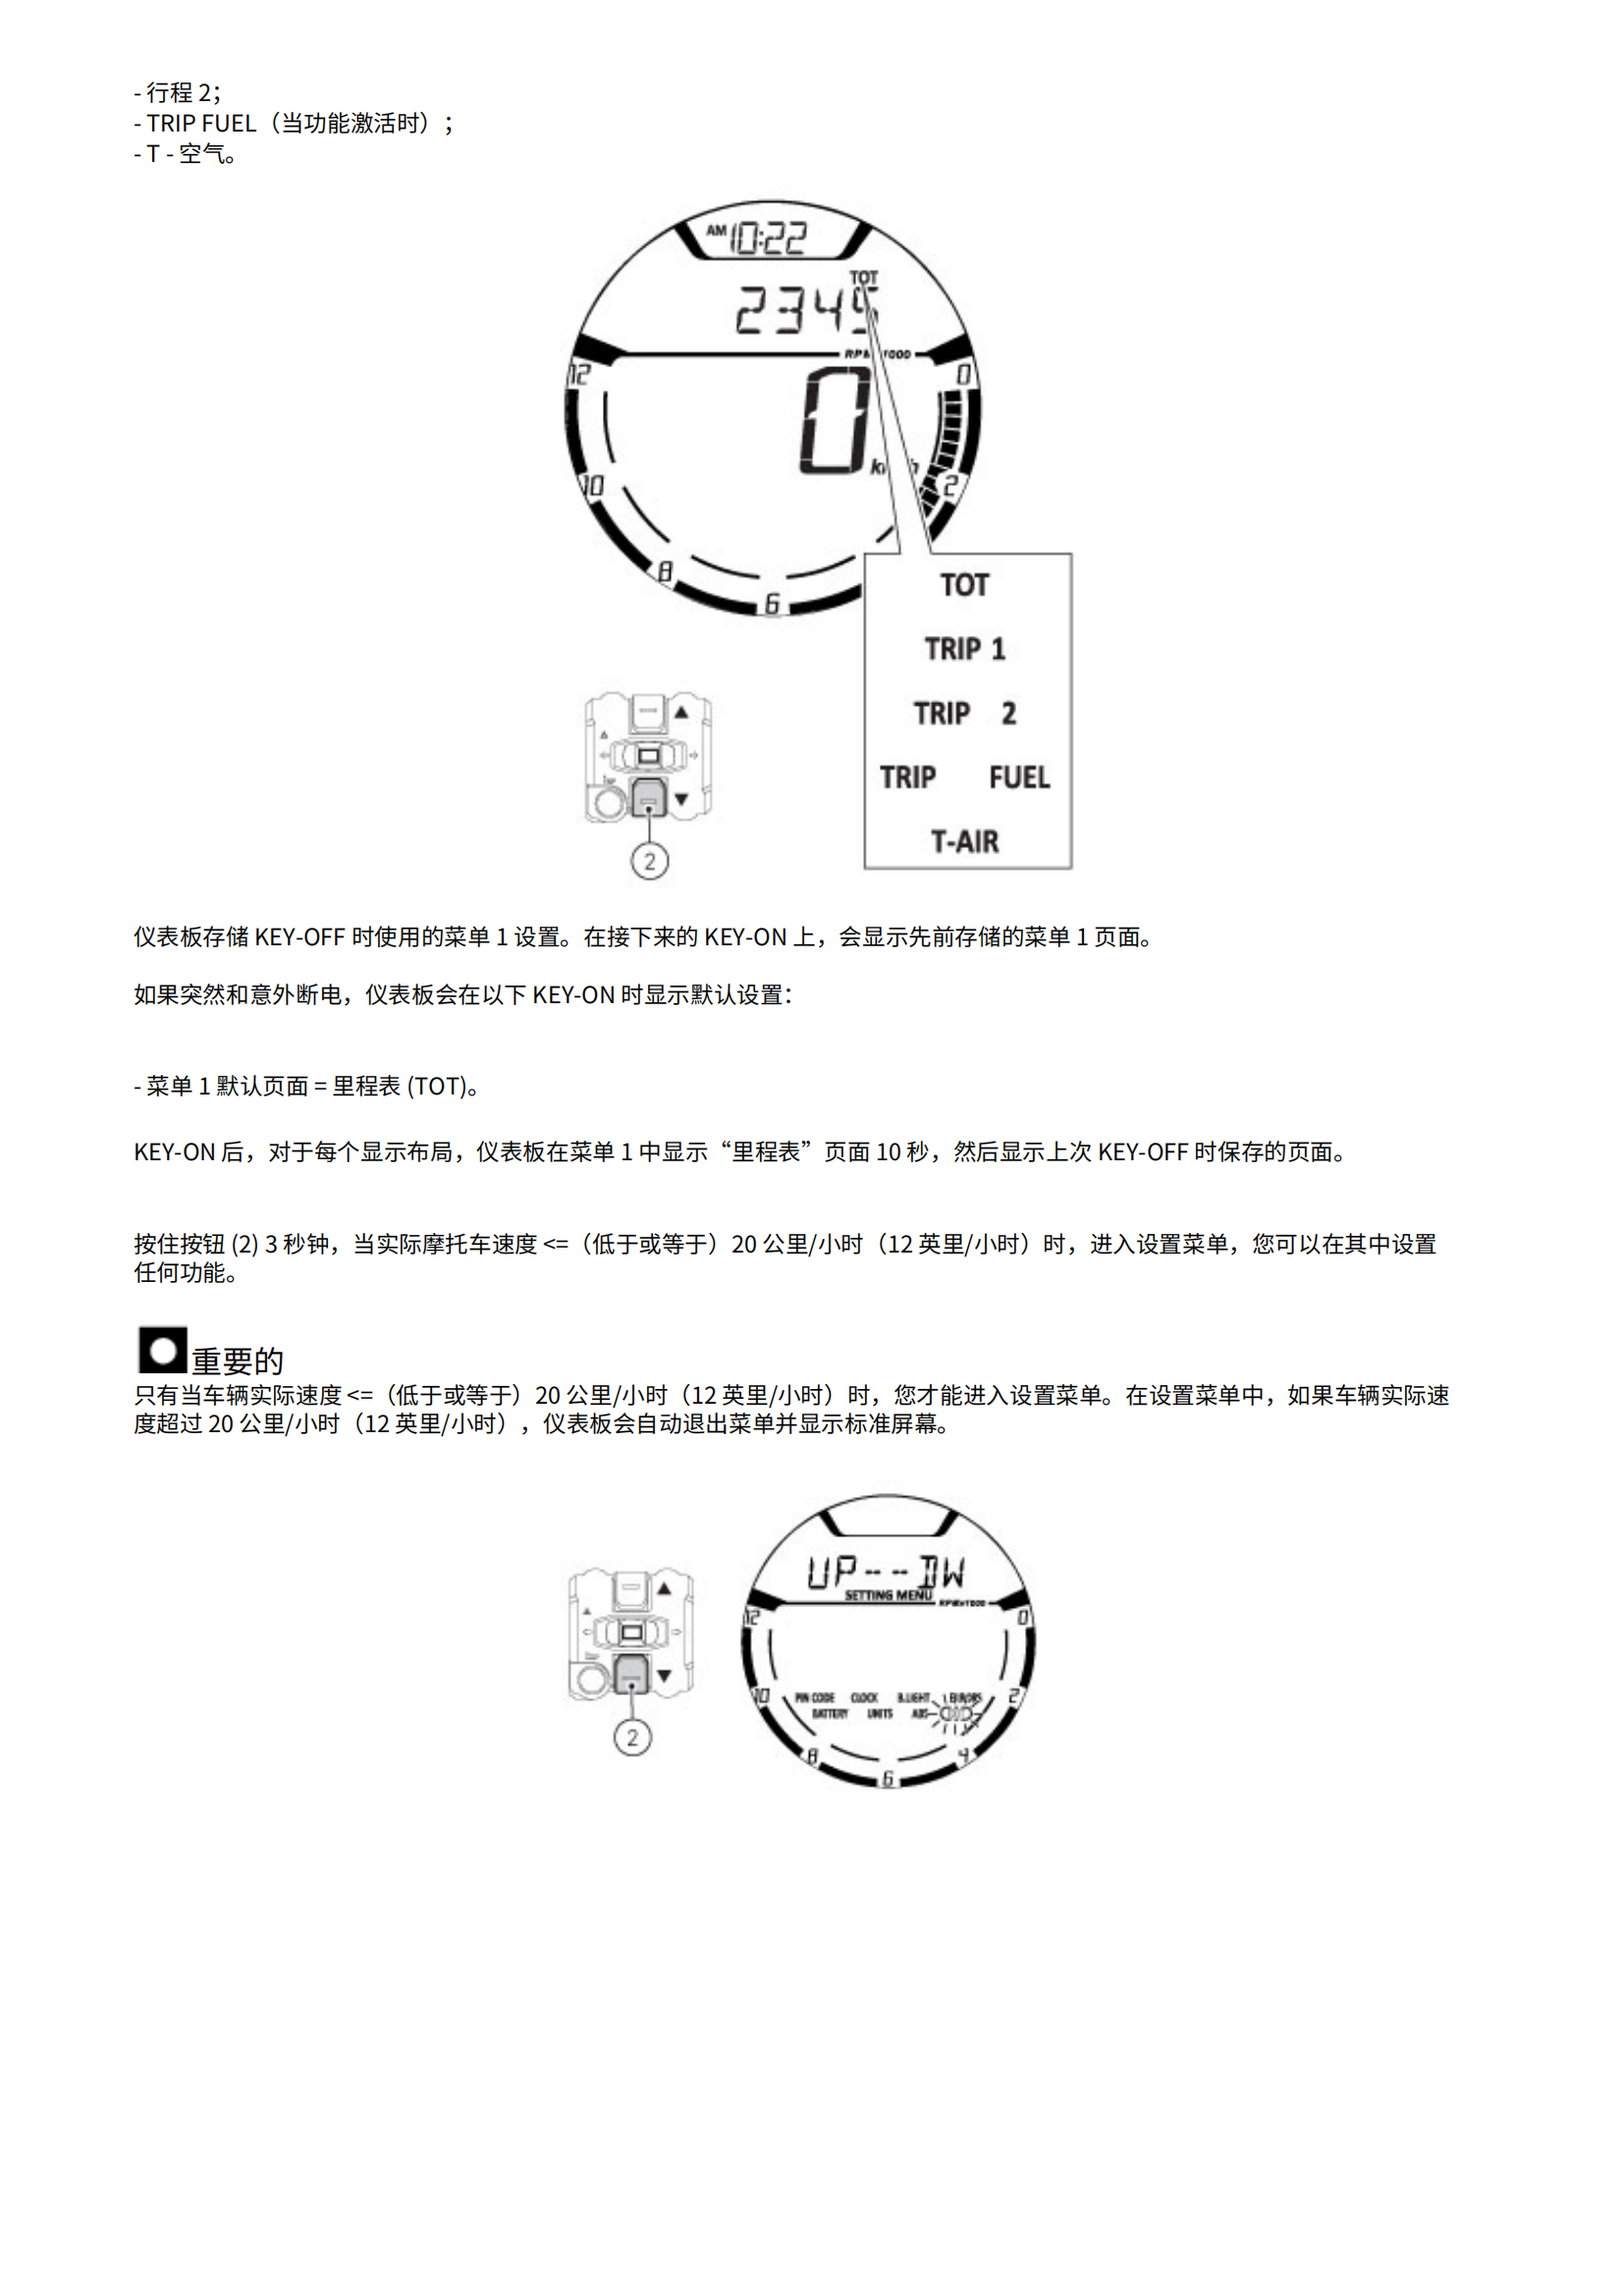 简体中文2015年杜卡迪自游800维修手册scrambler 800维修手册插图2